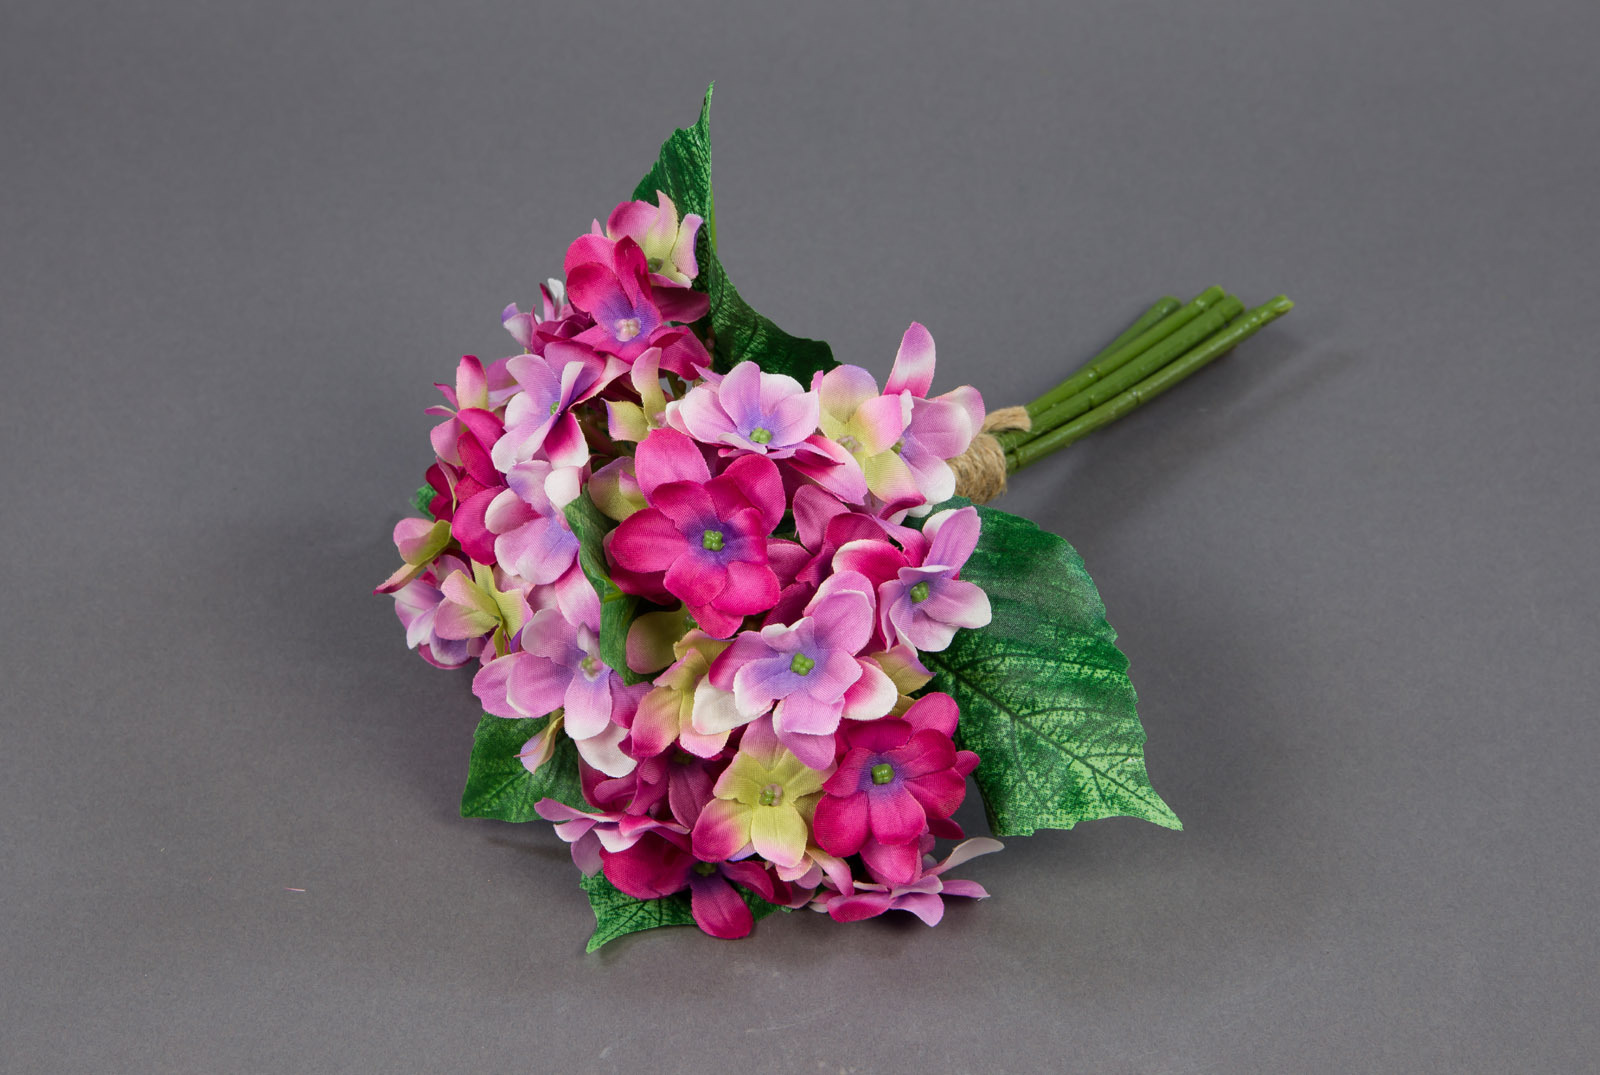 Hortensienstrauß / Hortensienbouquet 24cm rosa-pink PF Kunstblumen künstlicher Strauß Seidenblumen